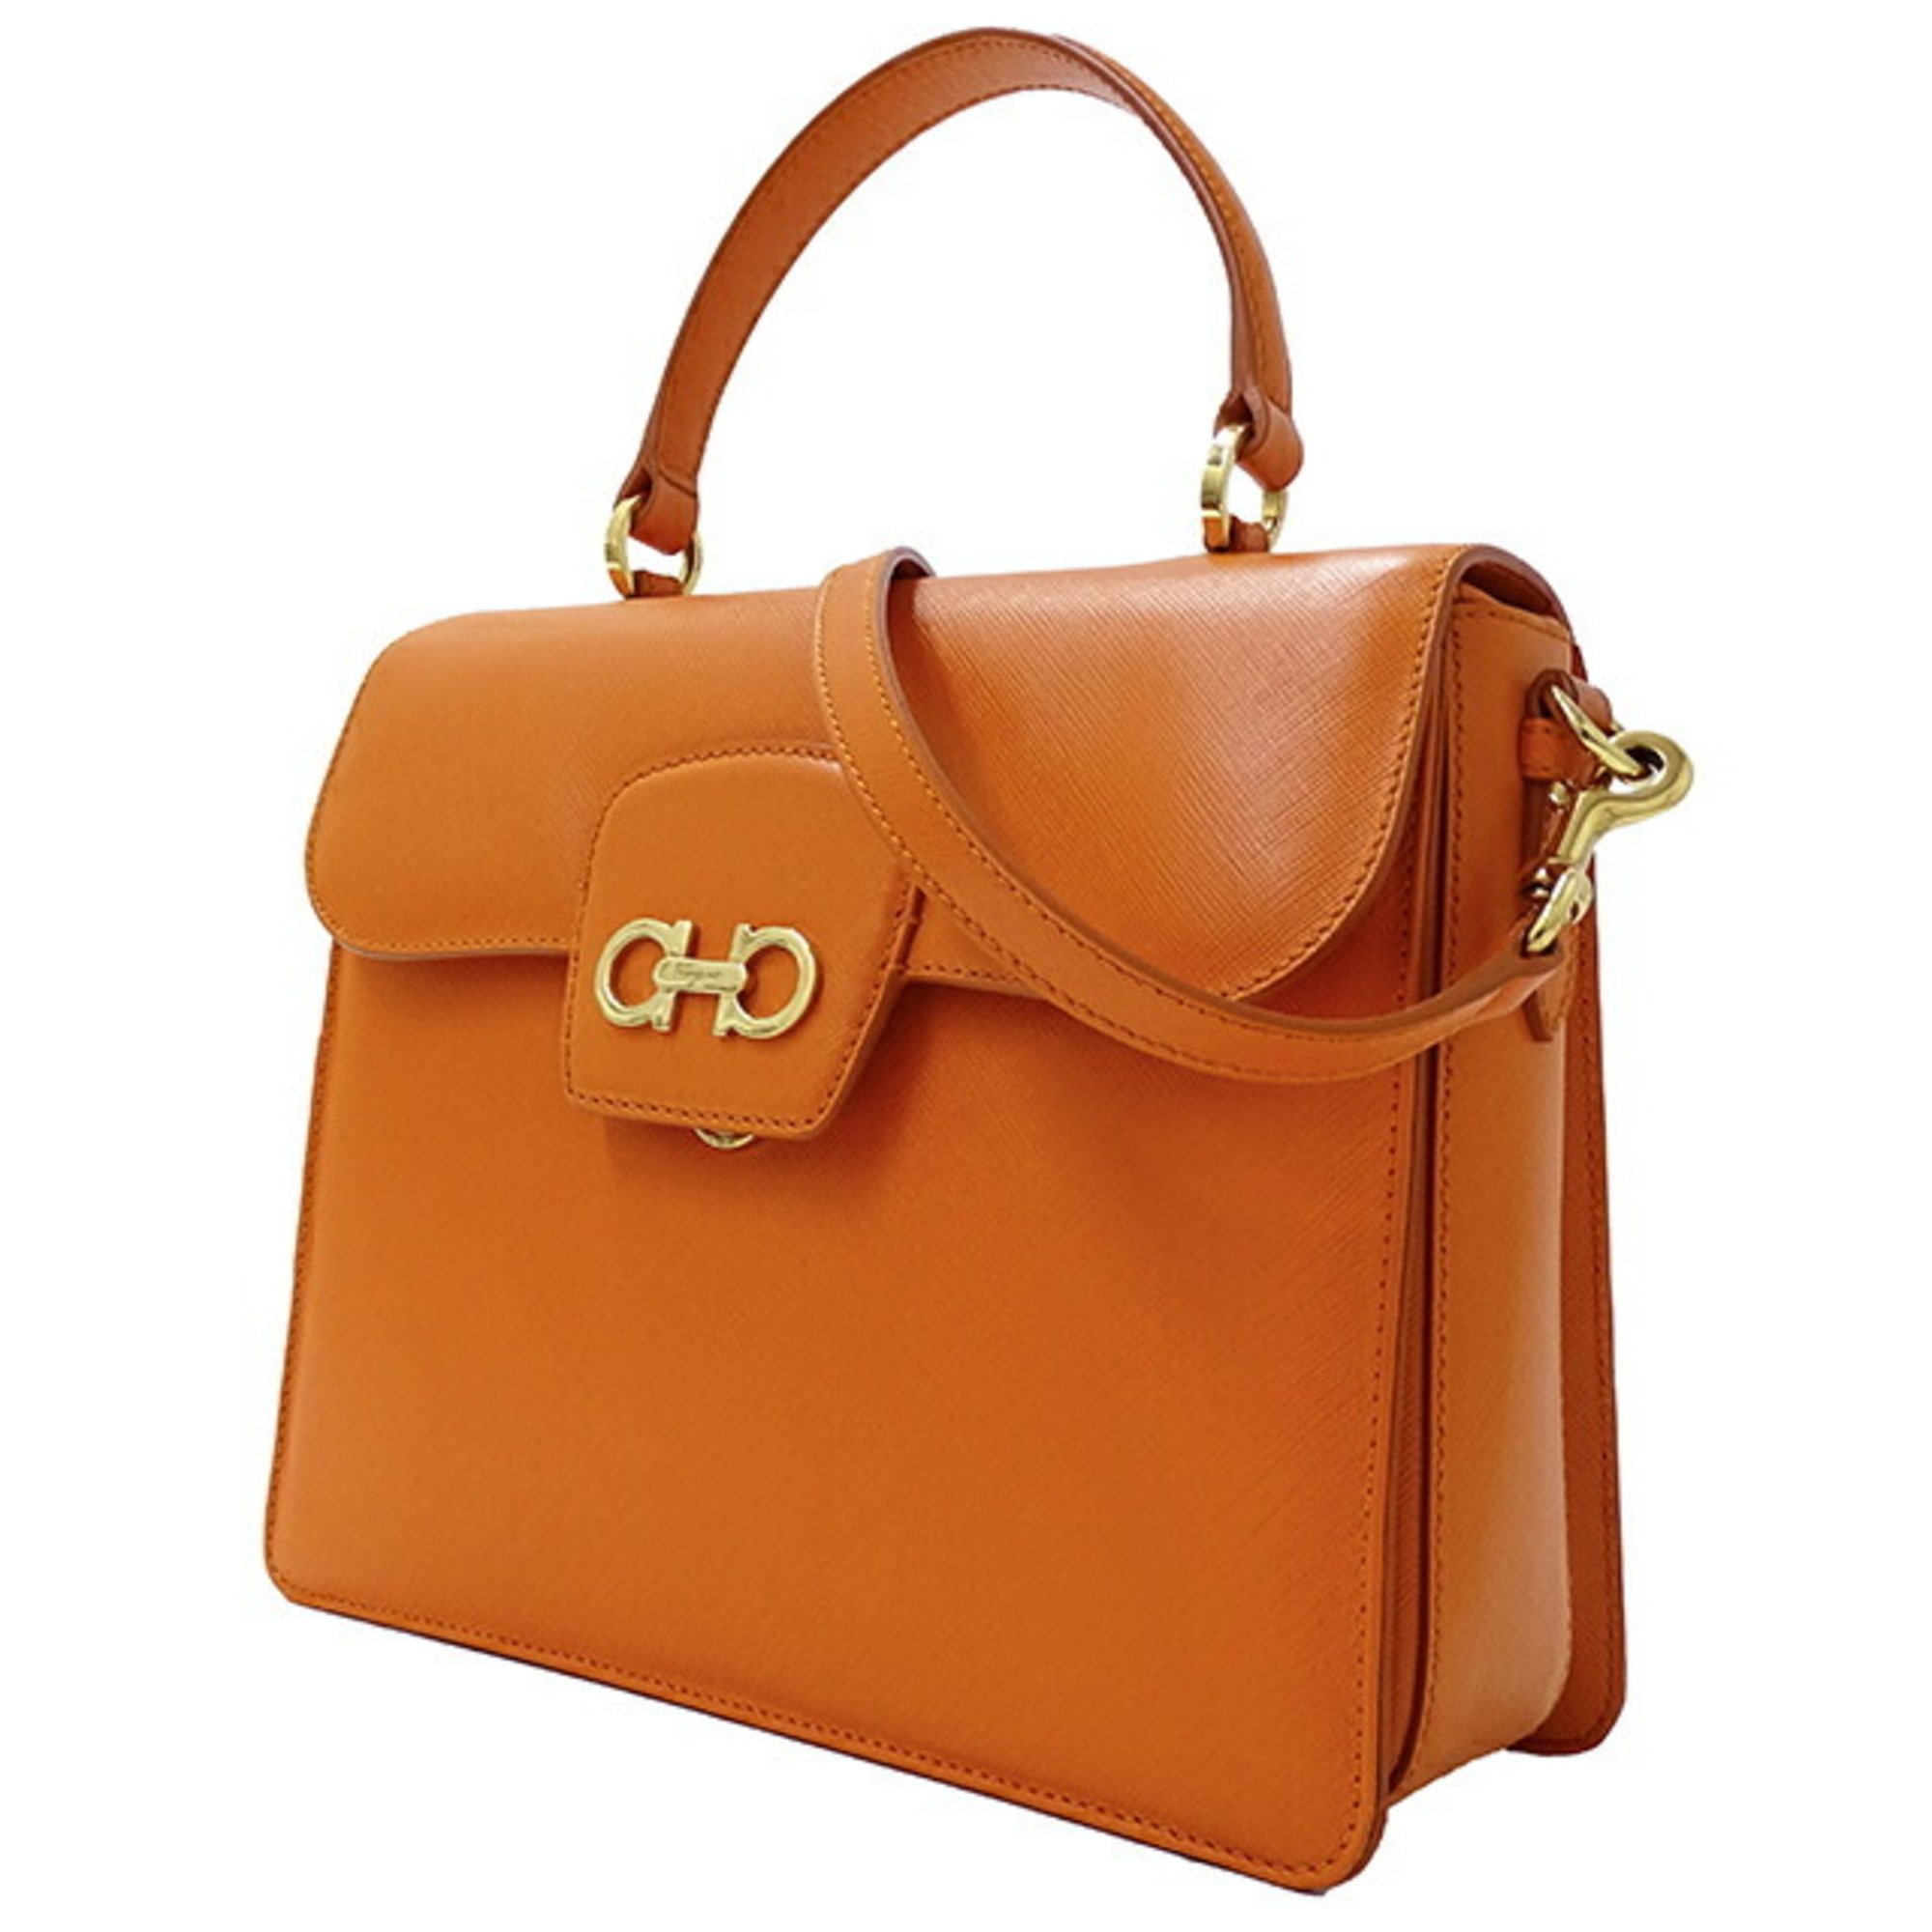 Salvatore Ferragamo Ferragamo Bag Women's Brand W Gancini Handbag Shoulder 2way Leather Orange